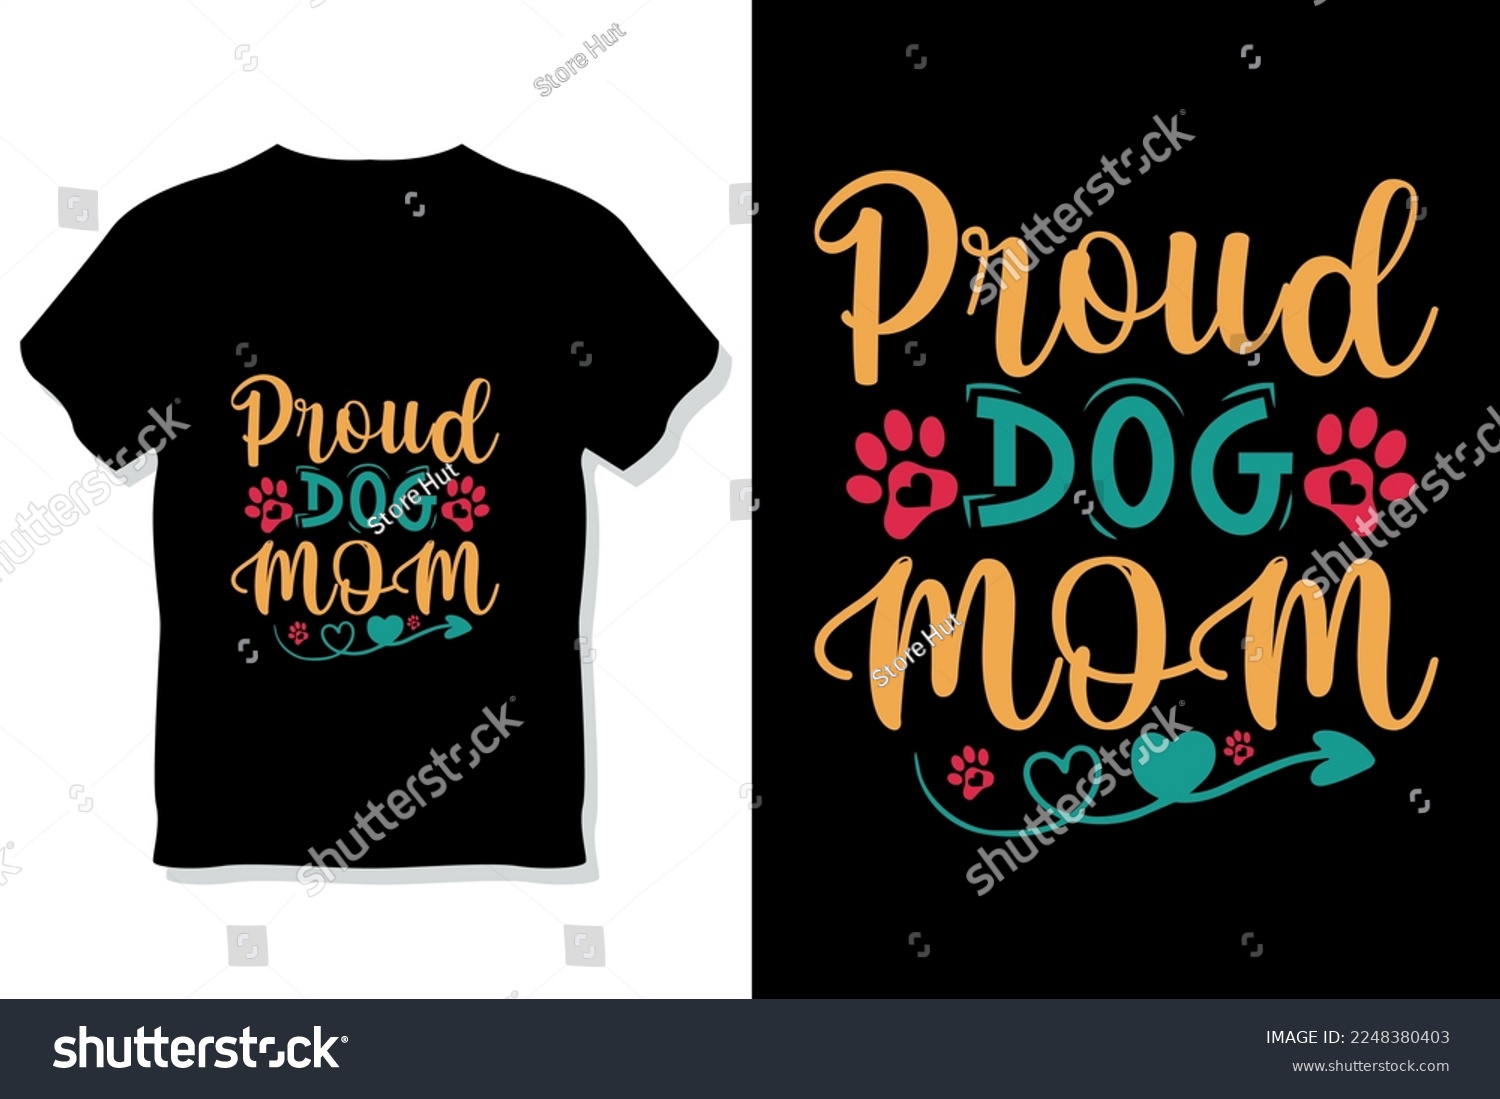 SVG of Dog typography or  proud dog mom shirt design
 svg